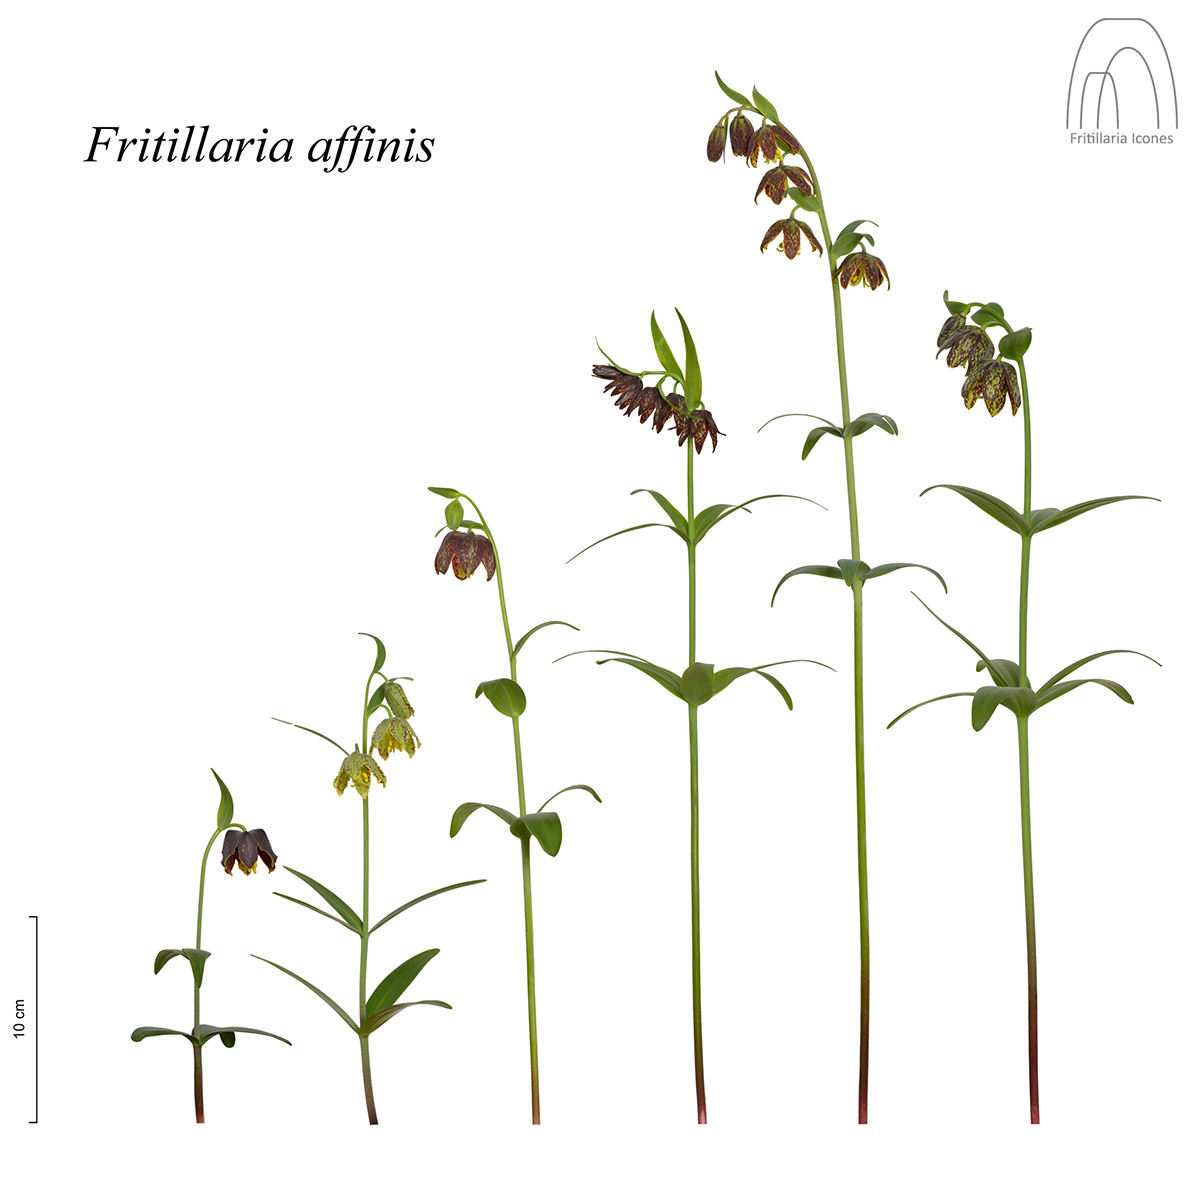 Species Boundaries: Fritillaria affinis 